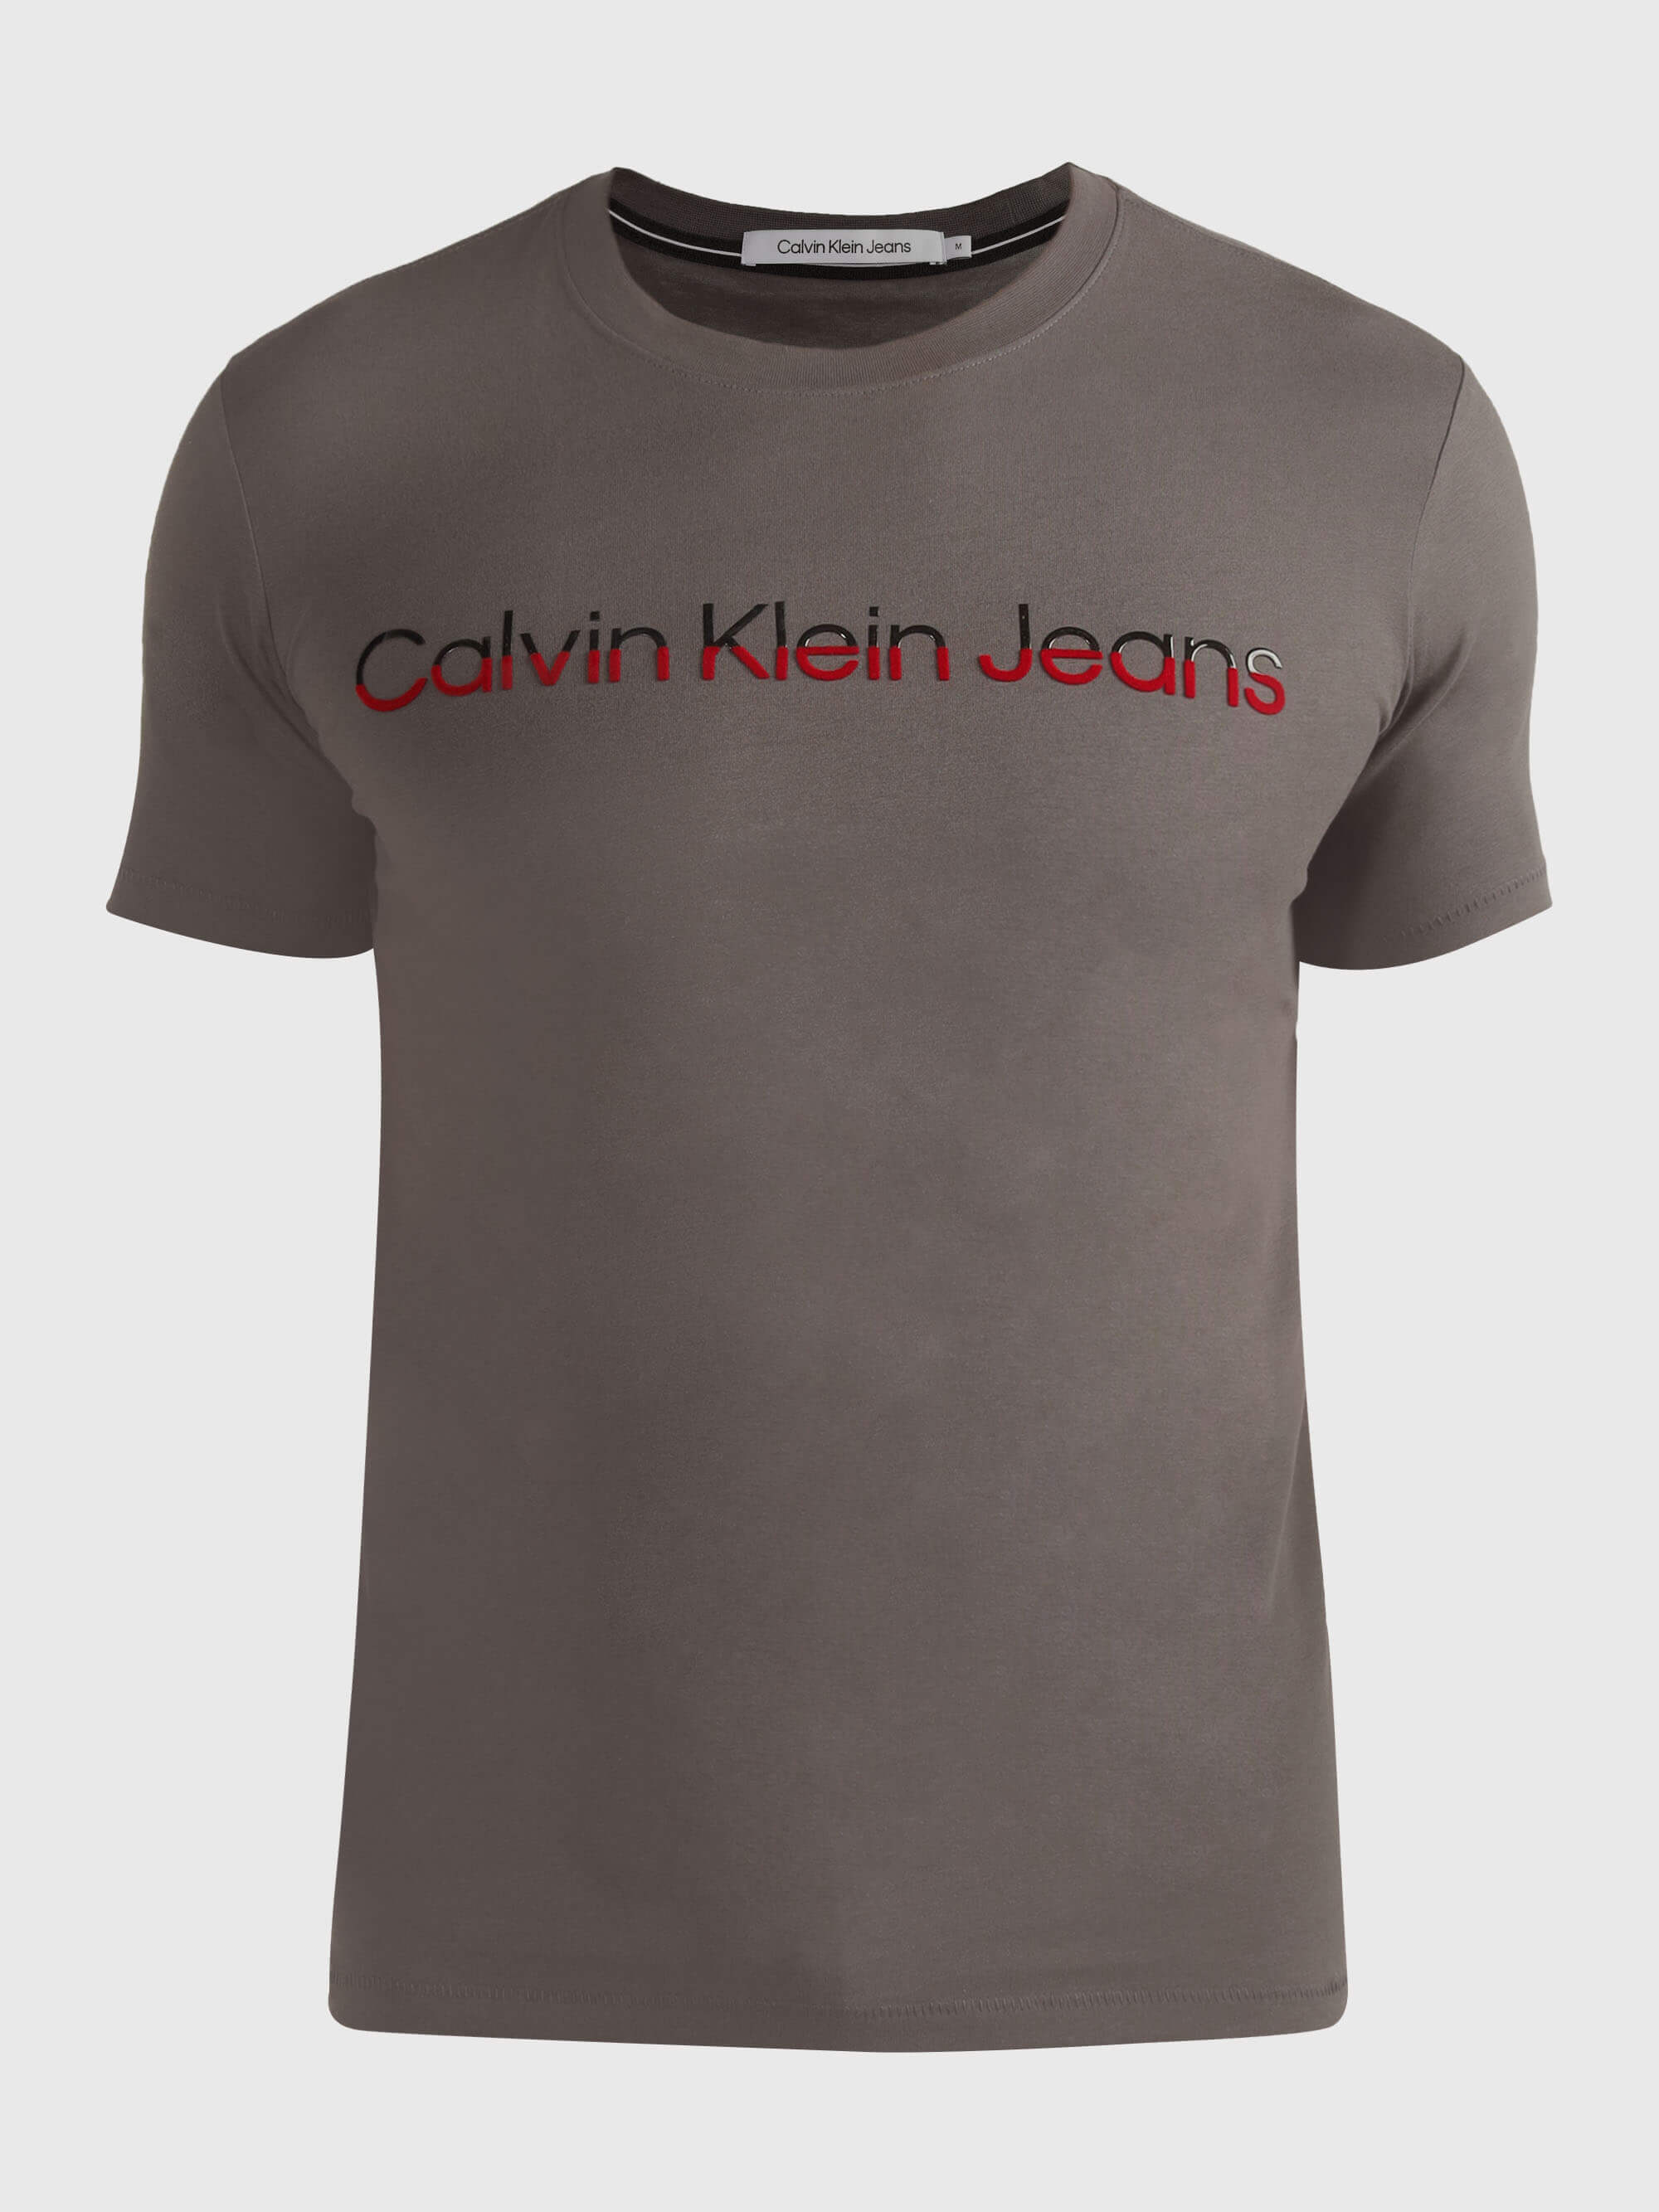 Playera Calvin Klein Logotipo Hombre Gris